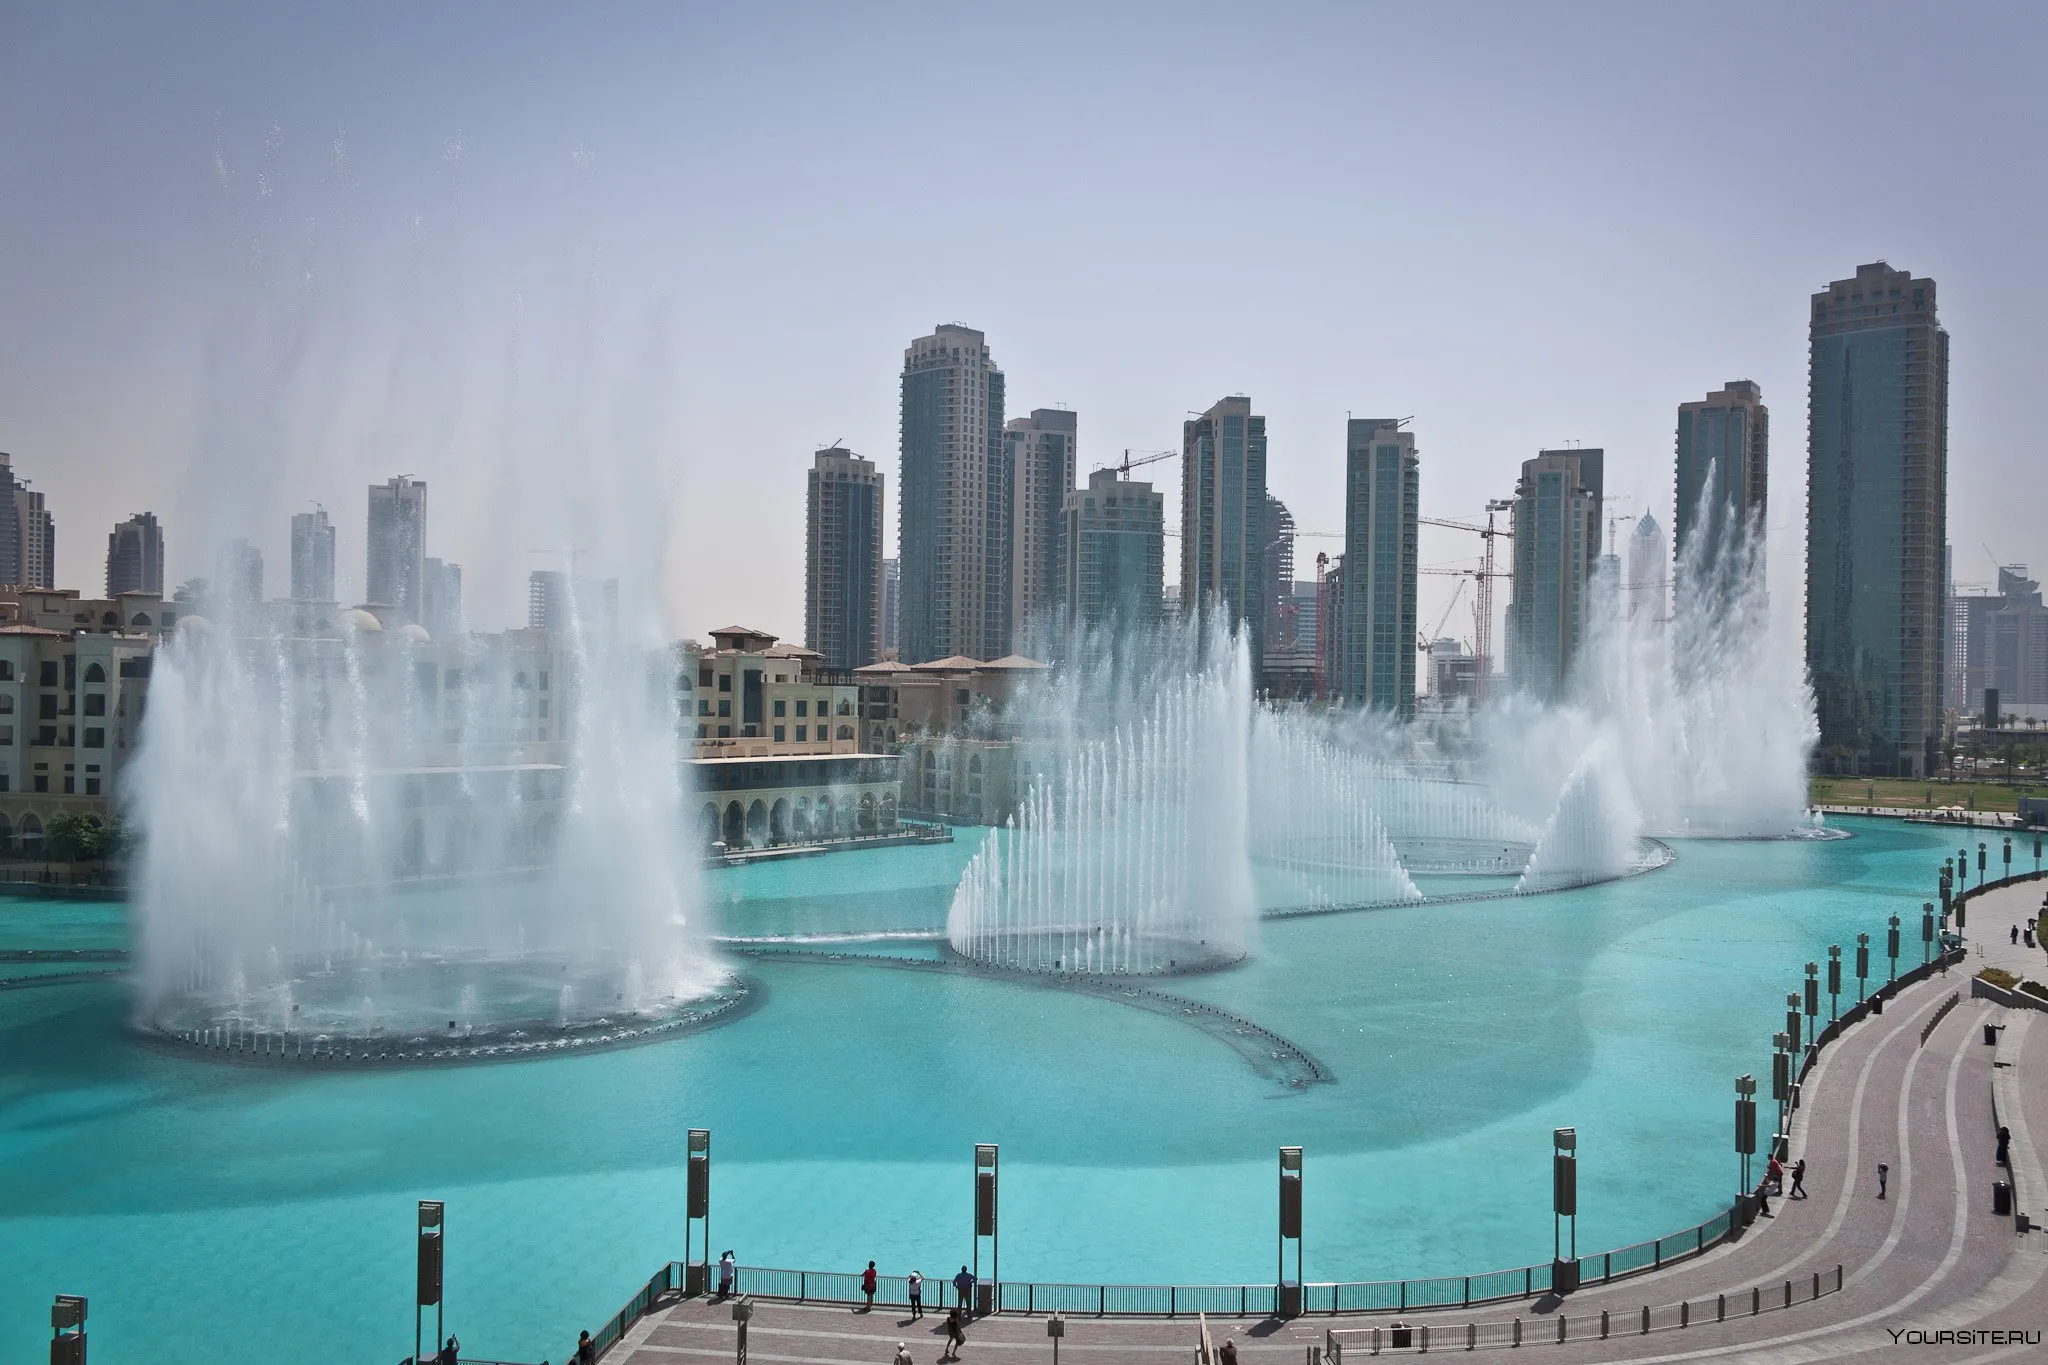 Дубайский фонтан - самый большой музыкальный фонтан в мире.